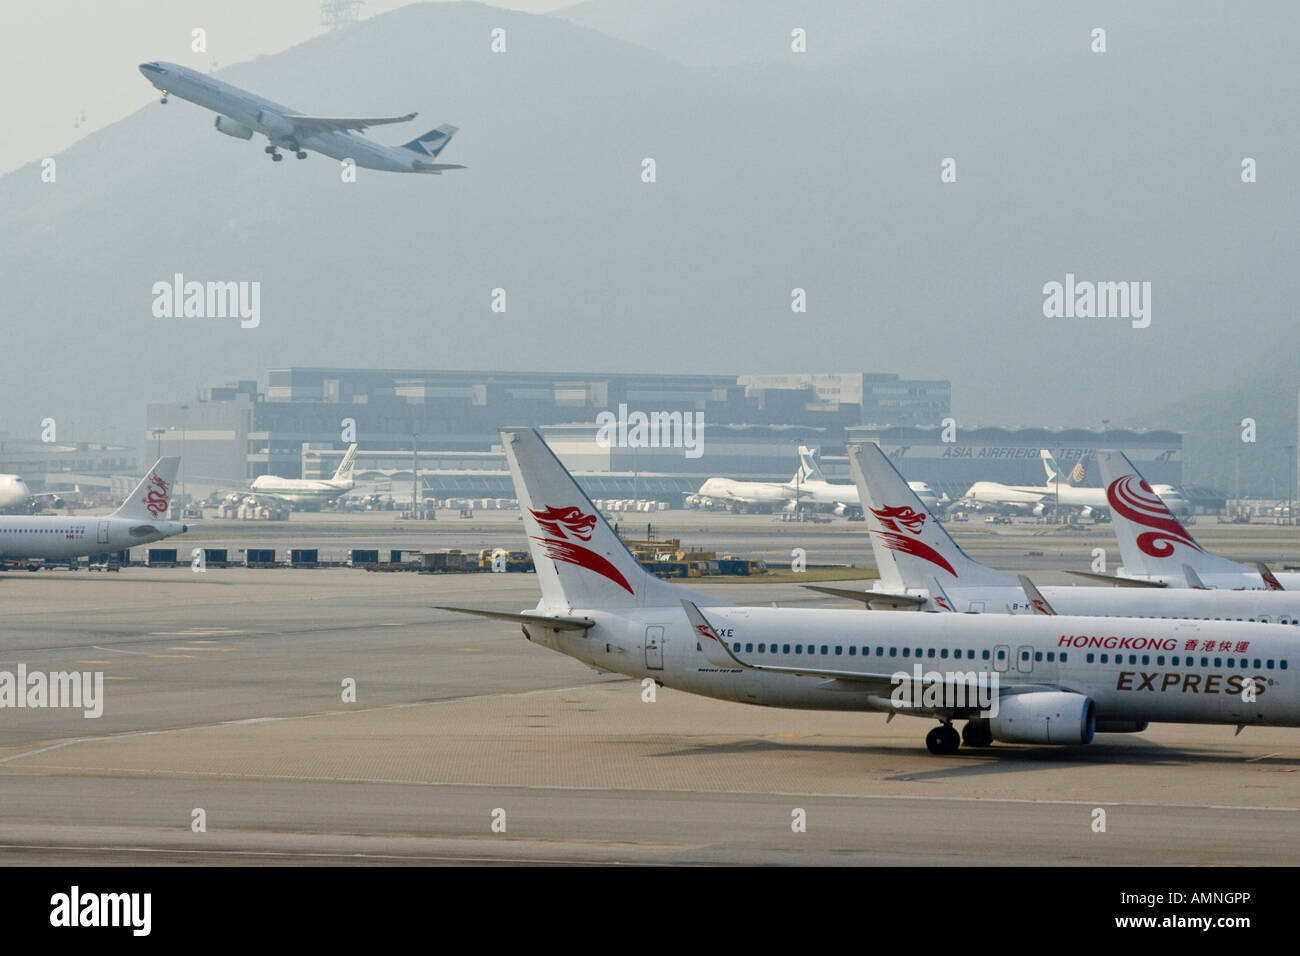 Hong Kong Express Airplane and Cathay Pacific Jet Taking Off at HKG Hong Kong International Airport Stock Photo